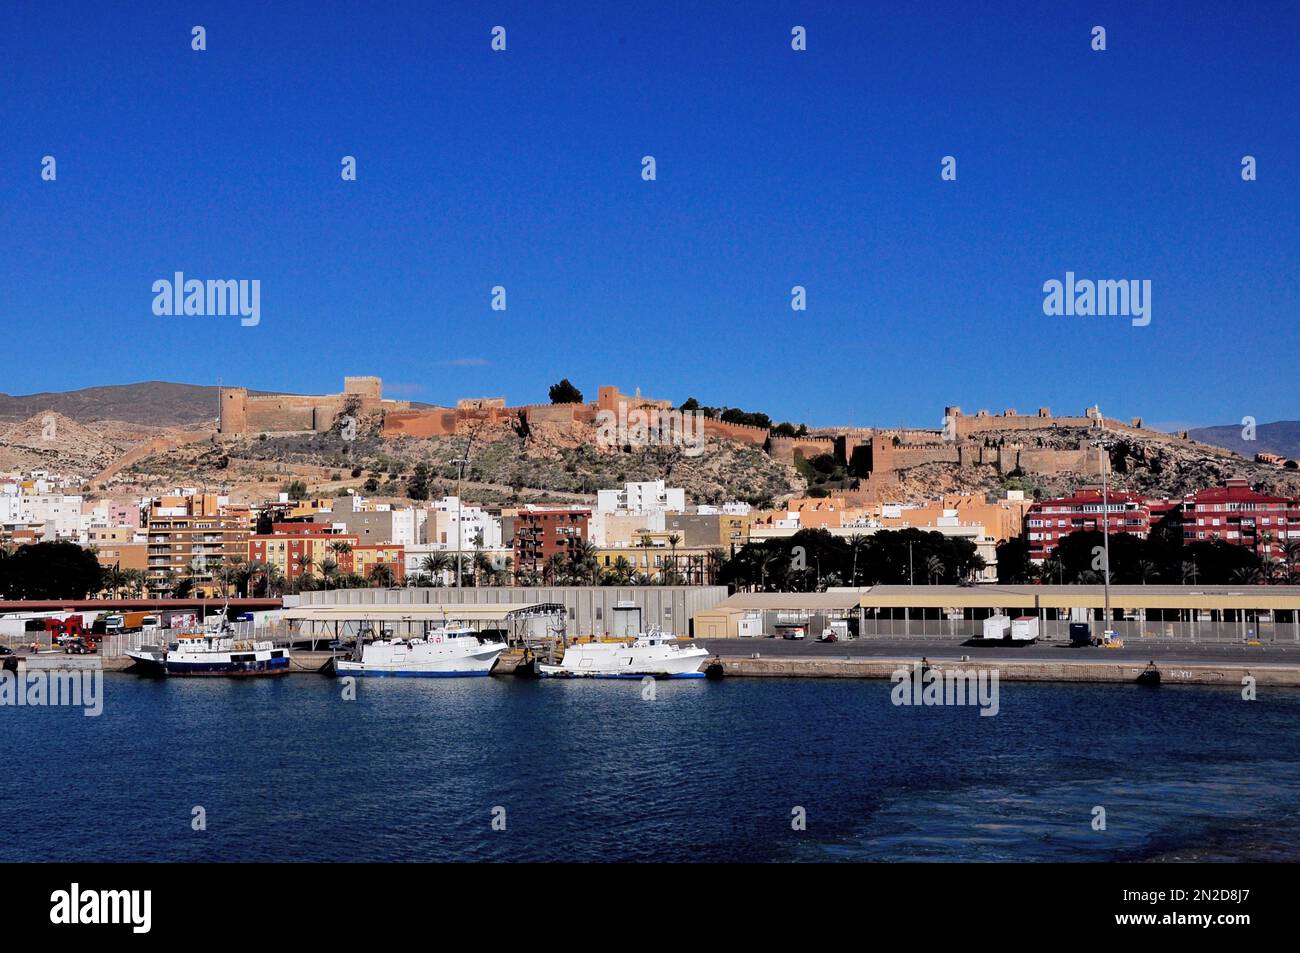 Ingresso al porto di Melilla-Nador, enclave spagnola nel nord del Marocco Foto Stock